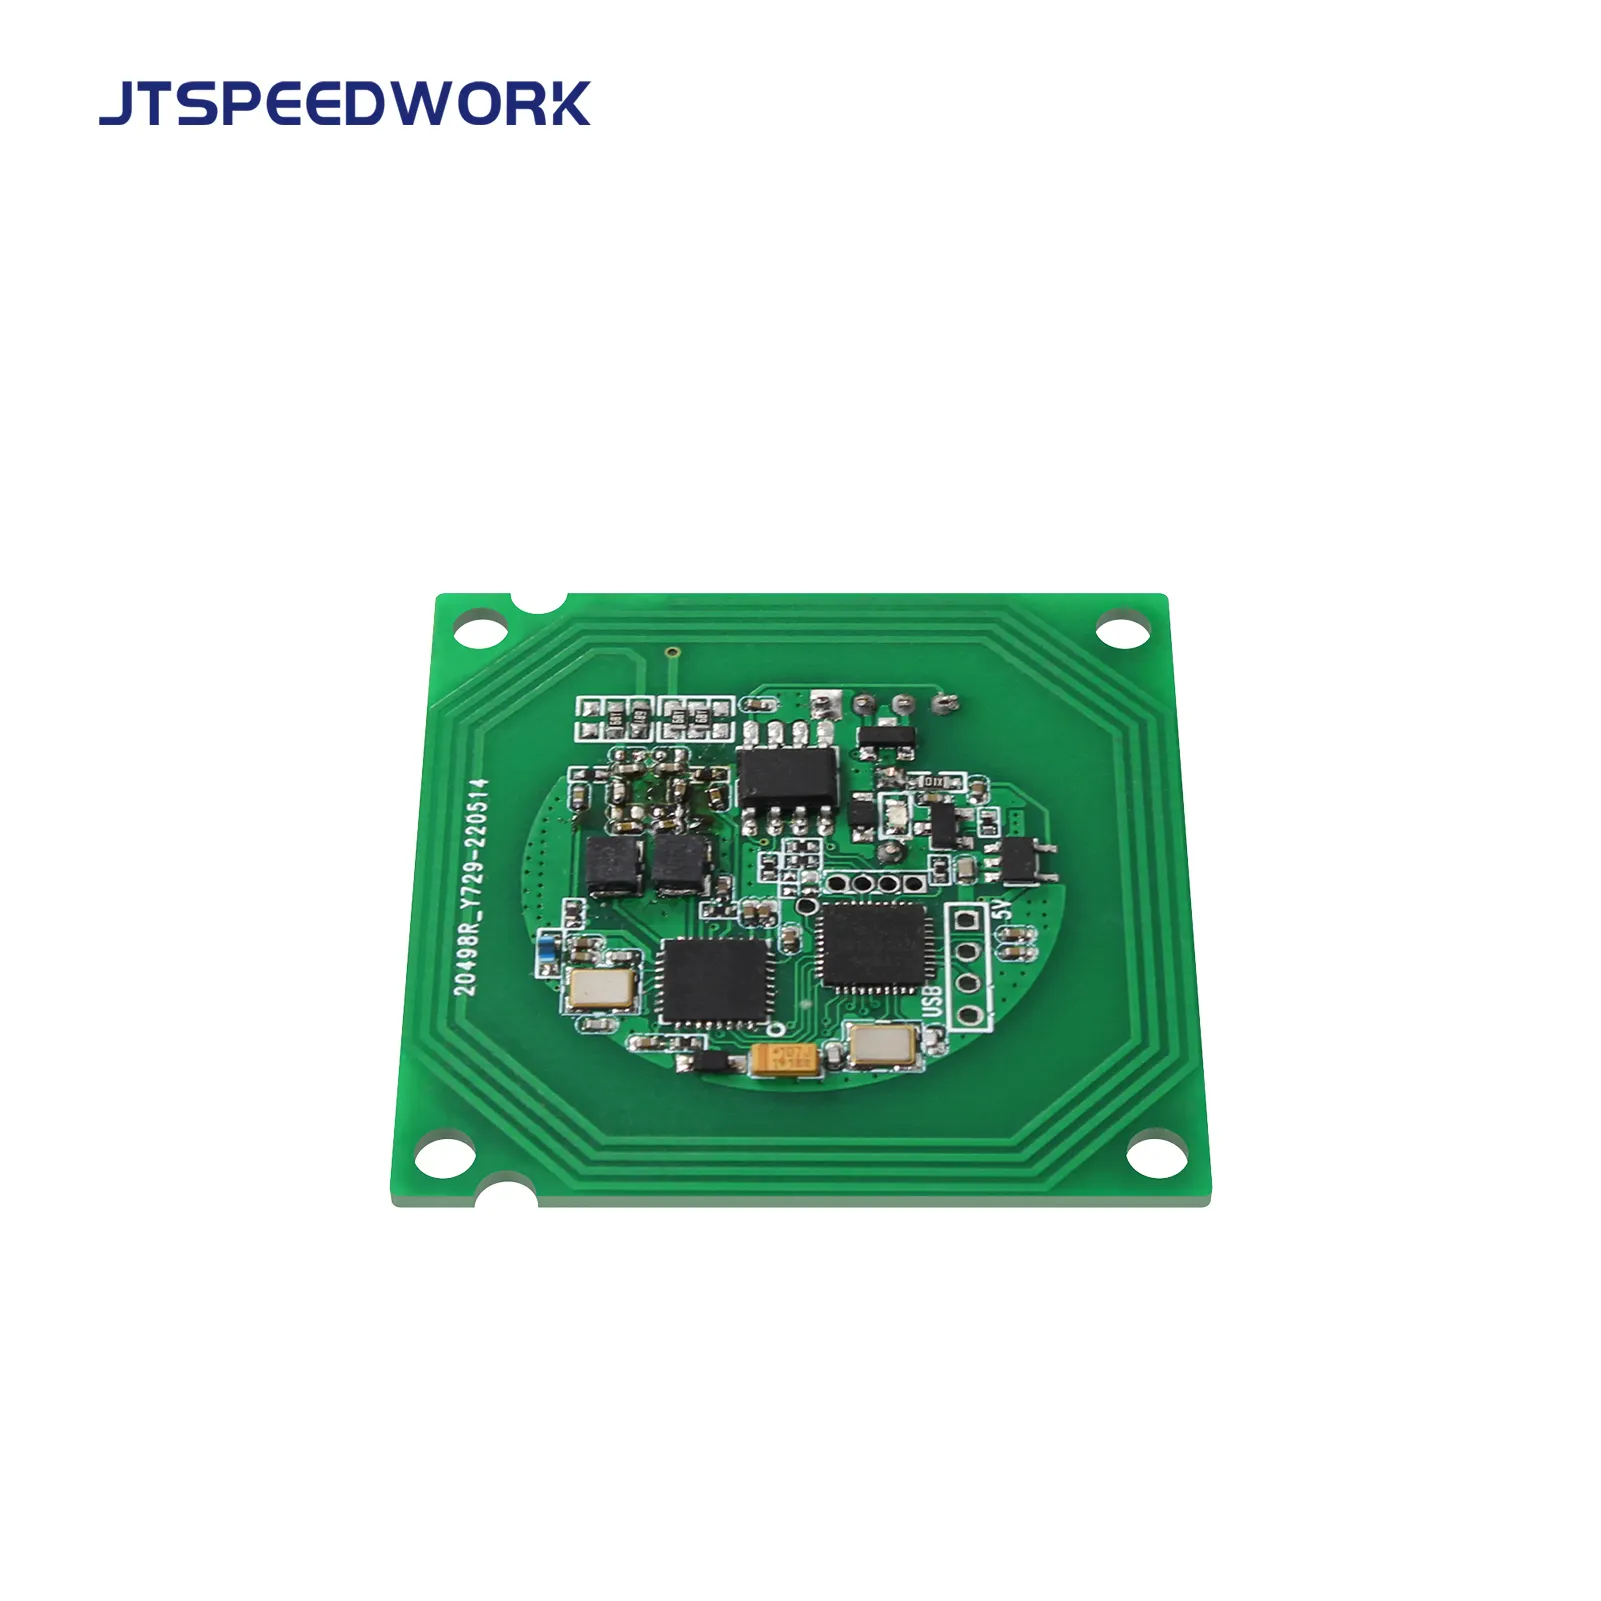 JT-1550 thông minh phí trạm EV NFC Nạp Tiền Thẻ 13.56 RFID mô-đun phát triển Kit HF chip cho RISO